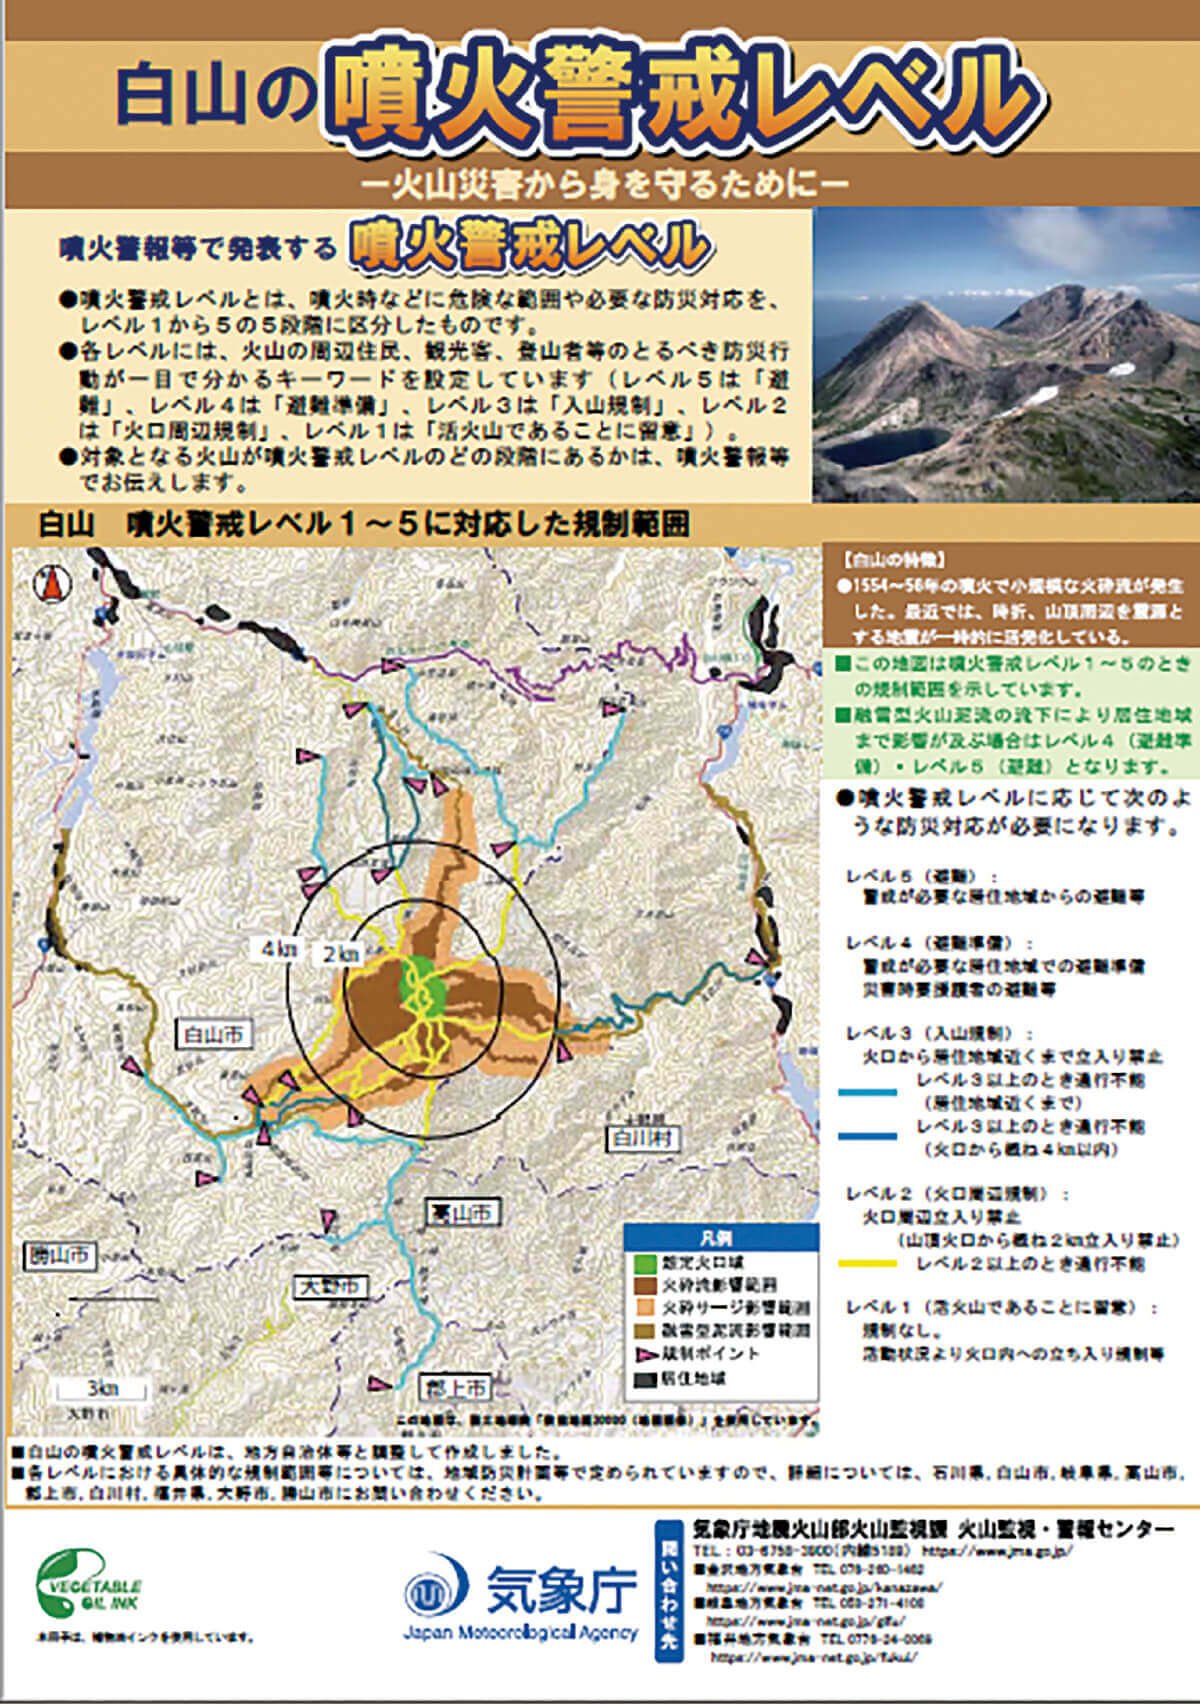 白山の噴火警戒レベルに関するリーフレット